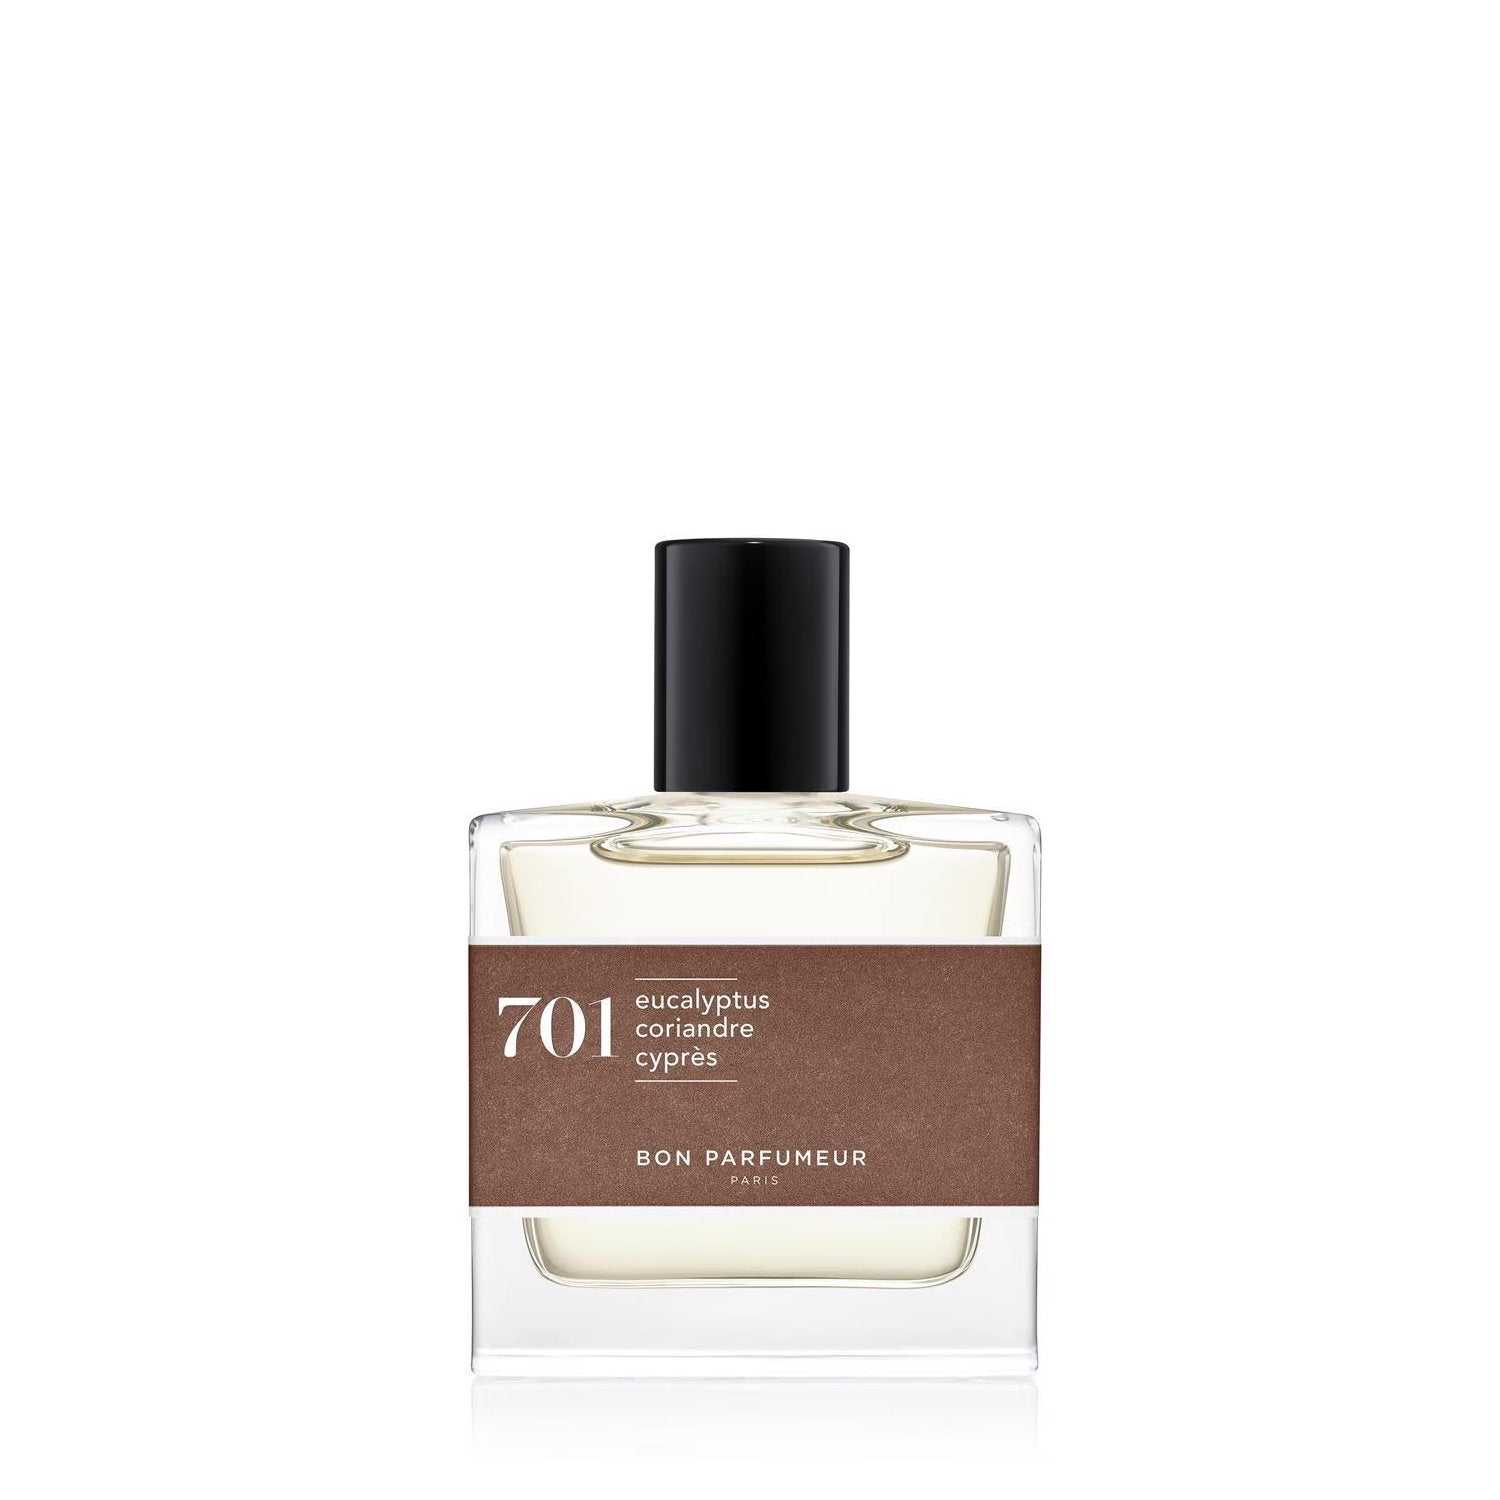 Eau de Parfum 701 - Bon Parfumeur